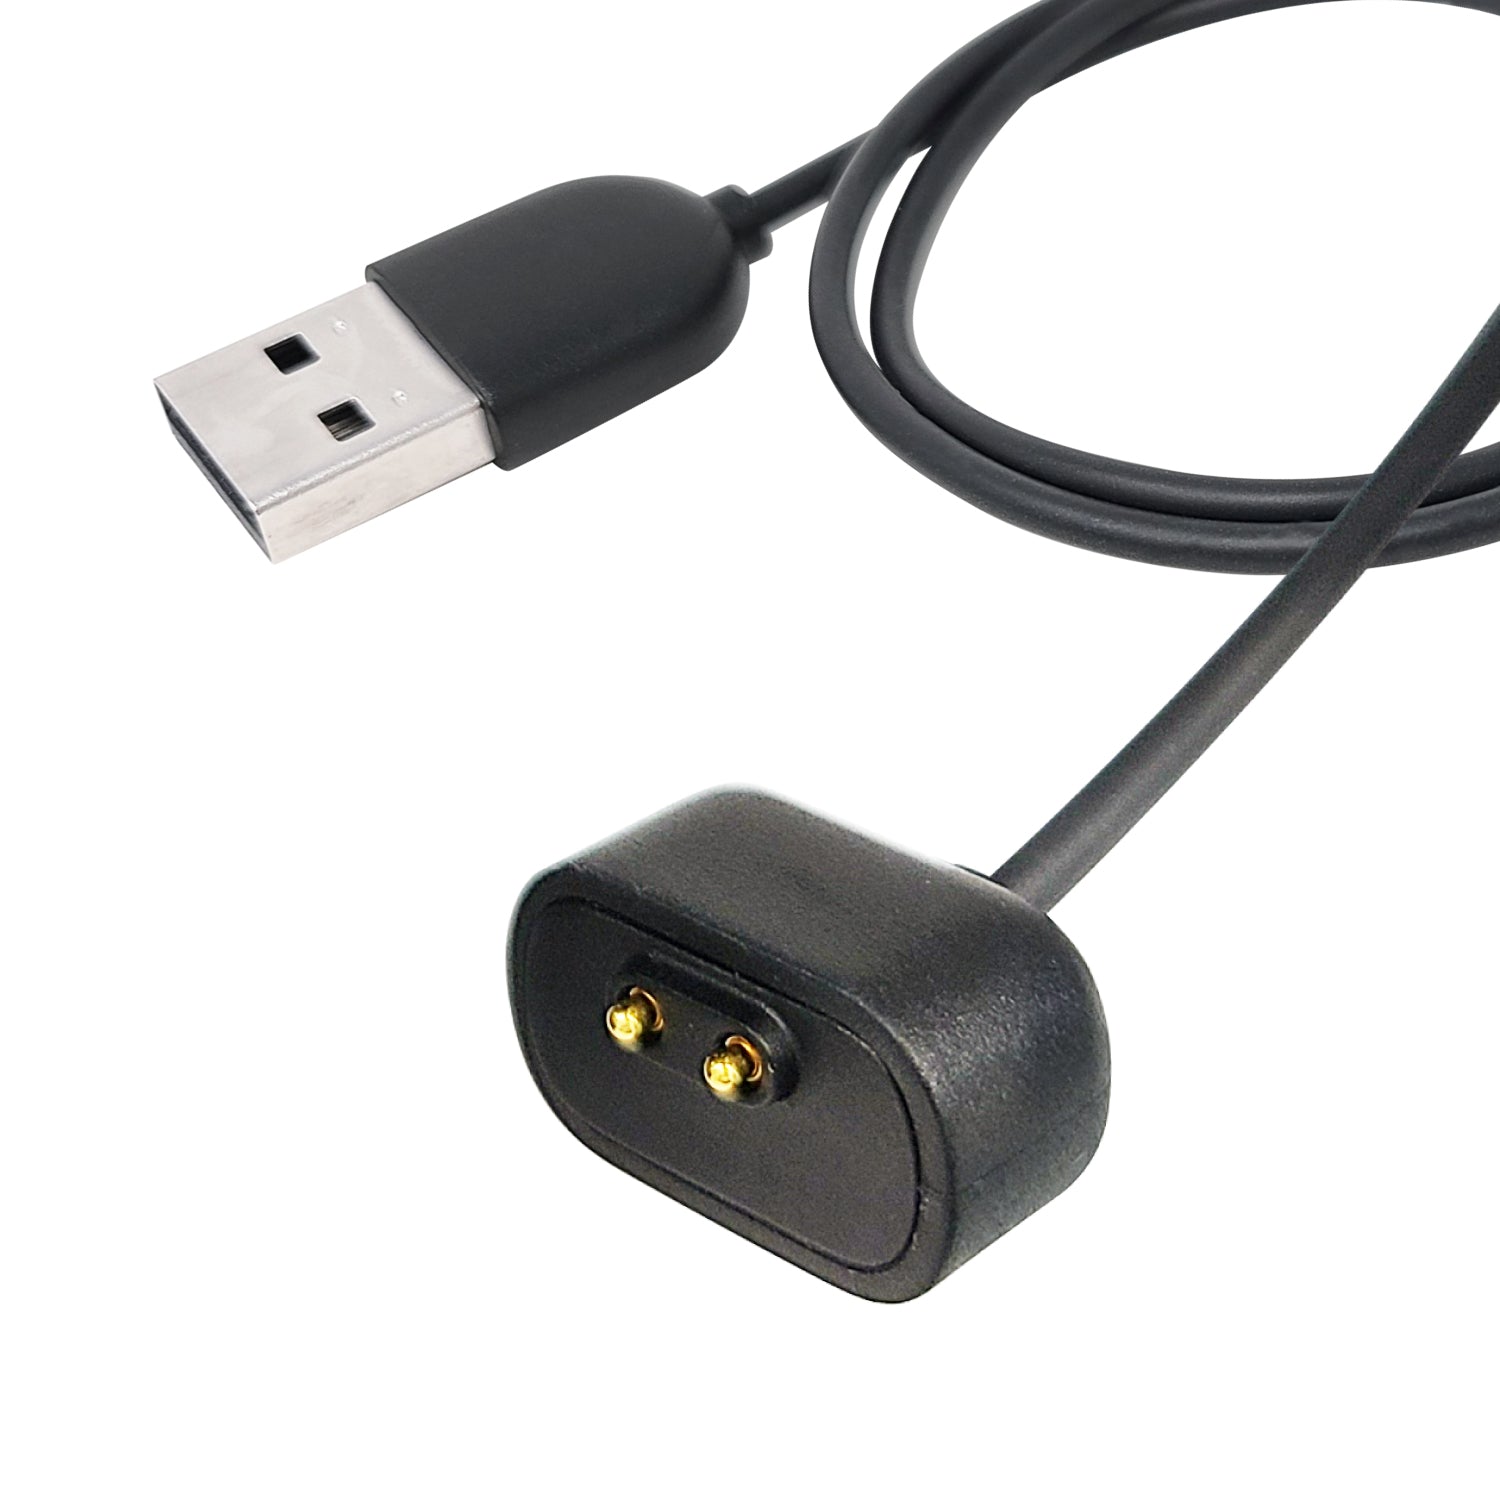 Amazfit 純正品 Band 7 スマートウォッチ専用 マグネット式 USB 充電器 充電ケーブル